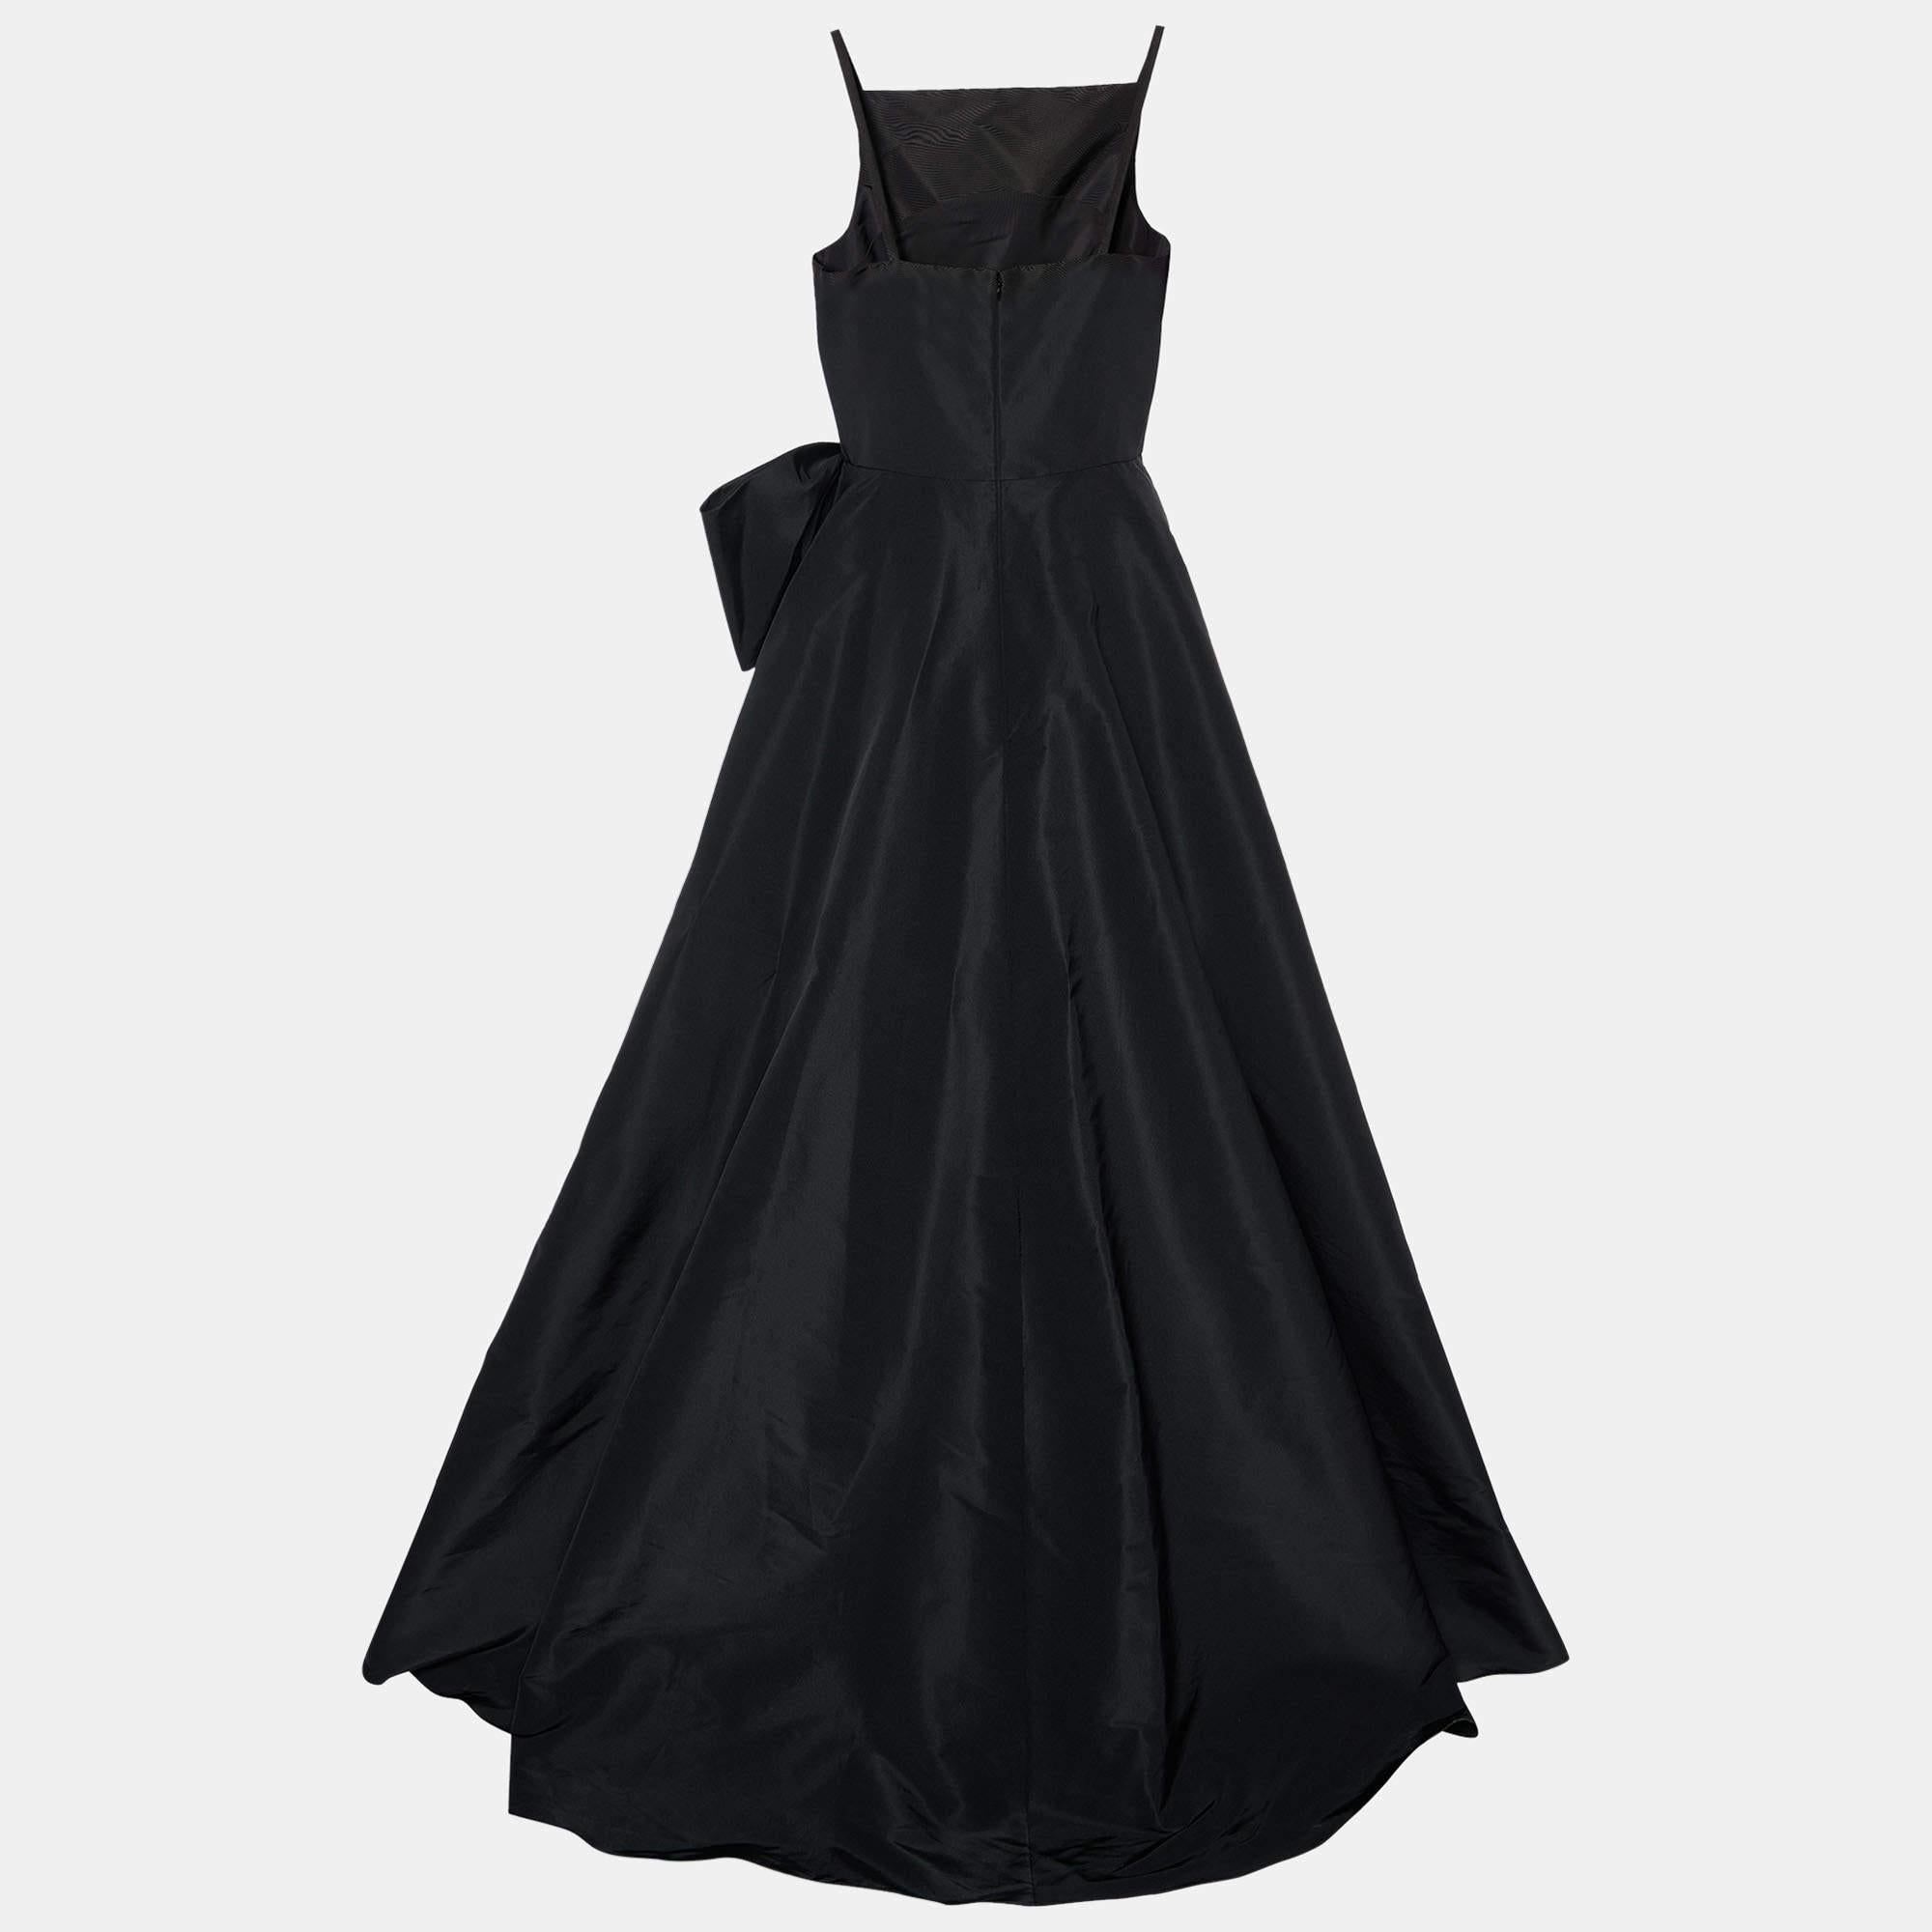 Cette robe de soirée de Carolina Herrera vous fera vibrer comme dans un rêve. Taillée à la perfection, cette robe en taffetas de soie noire a été joliment drapée et comporte un nœud et un ourlet qui descend jusqu'au sol. Associez-la à des chaussures